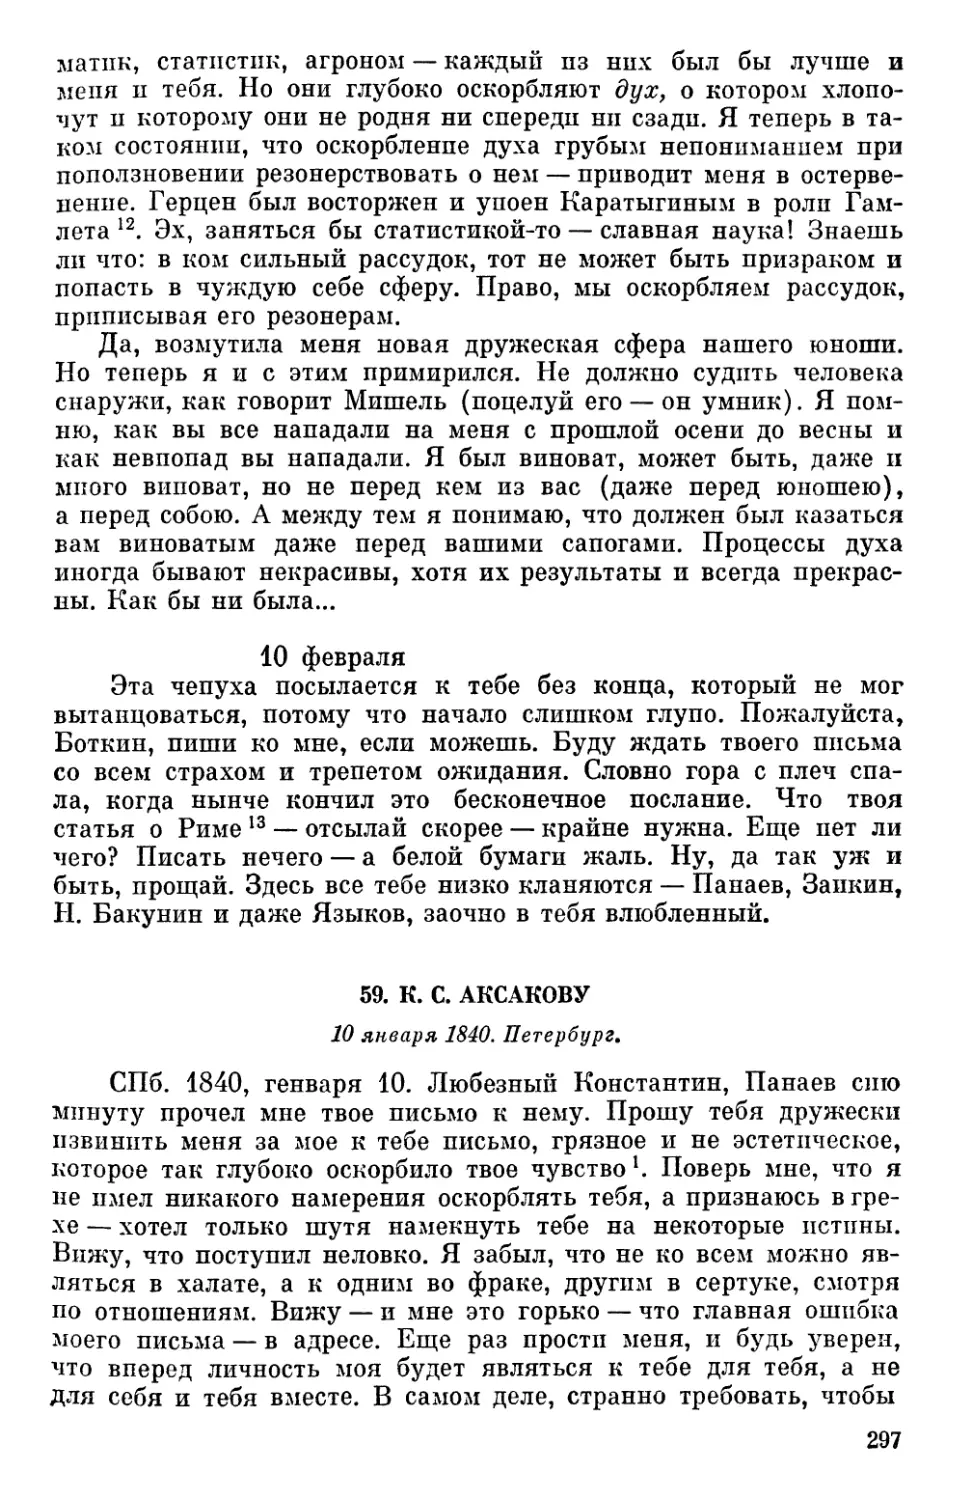 59. К. С. Аксакову. 10 января 1840